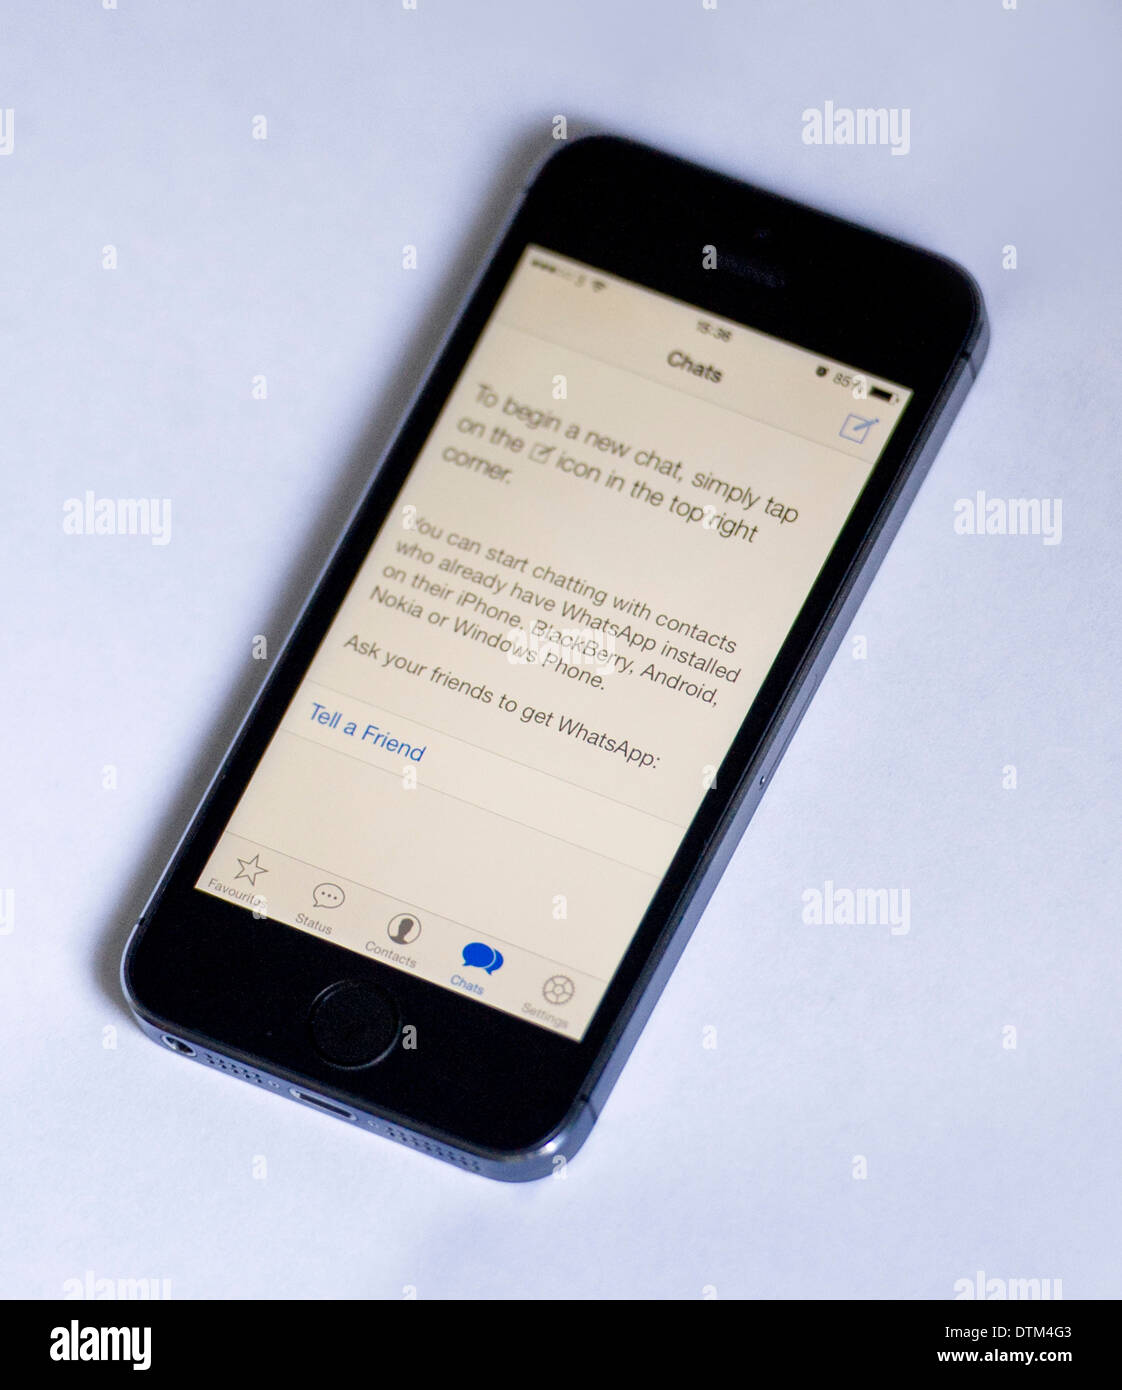 Un iPhone 5S sur un fond blanc, montrant l'application Whatsapp Afficher instructions pour démarrer une nouvelle conversation. Banque D'Images